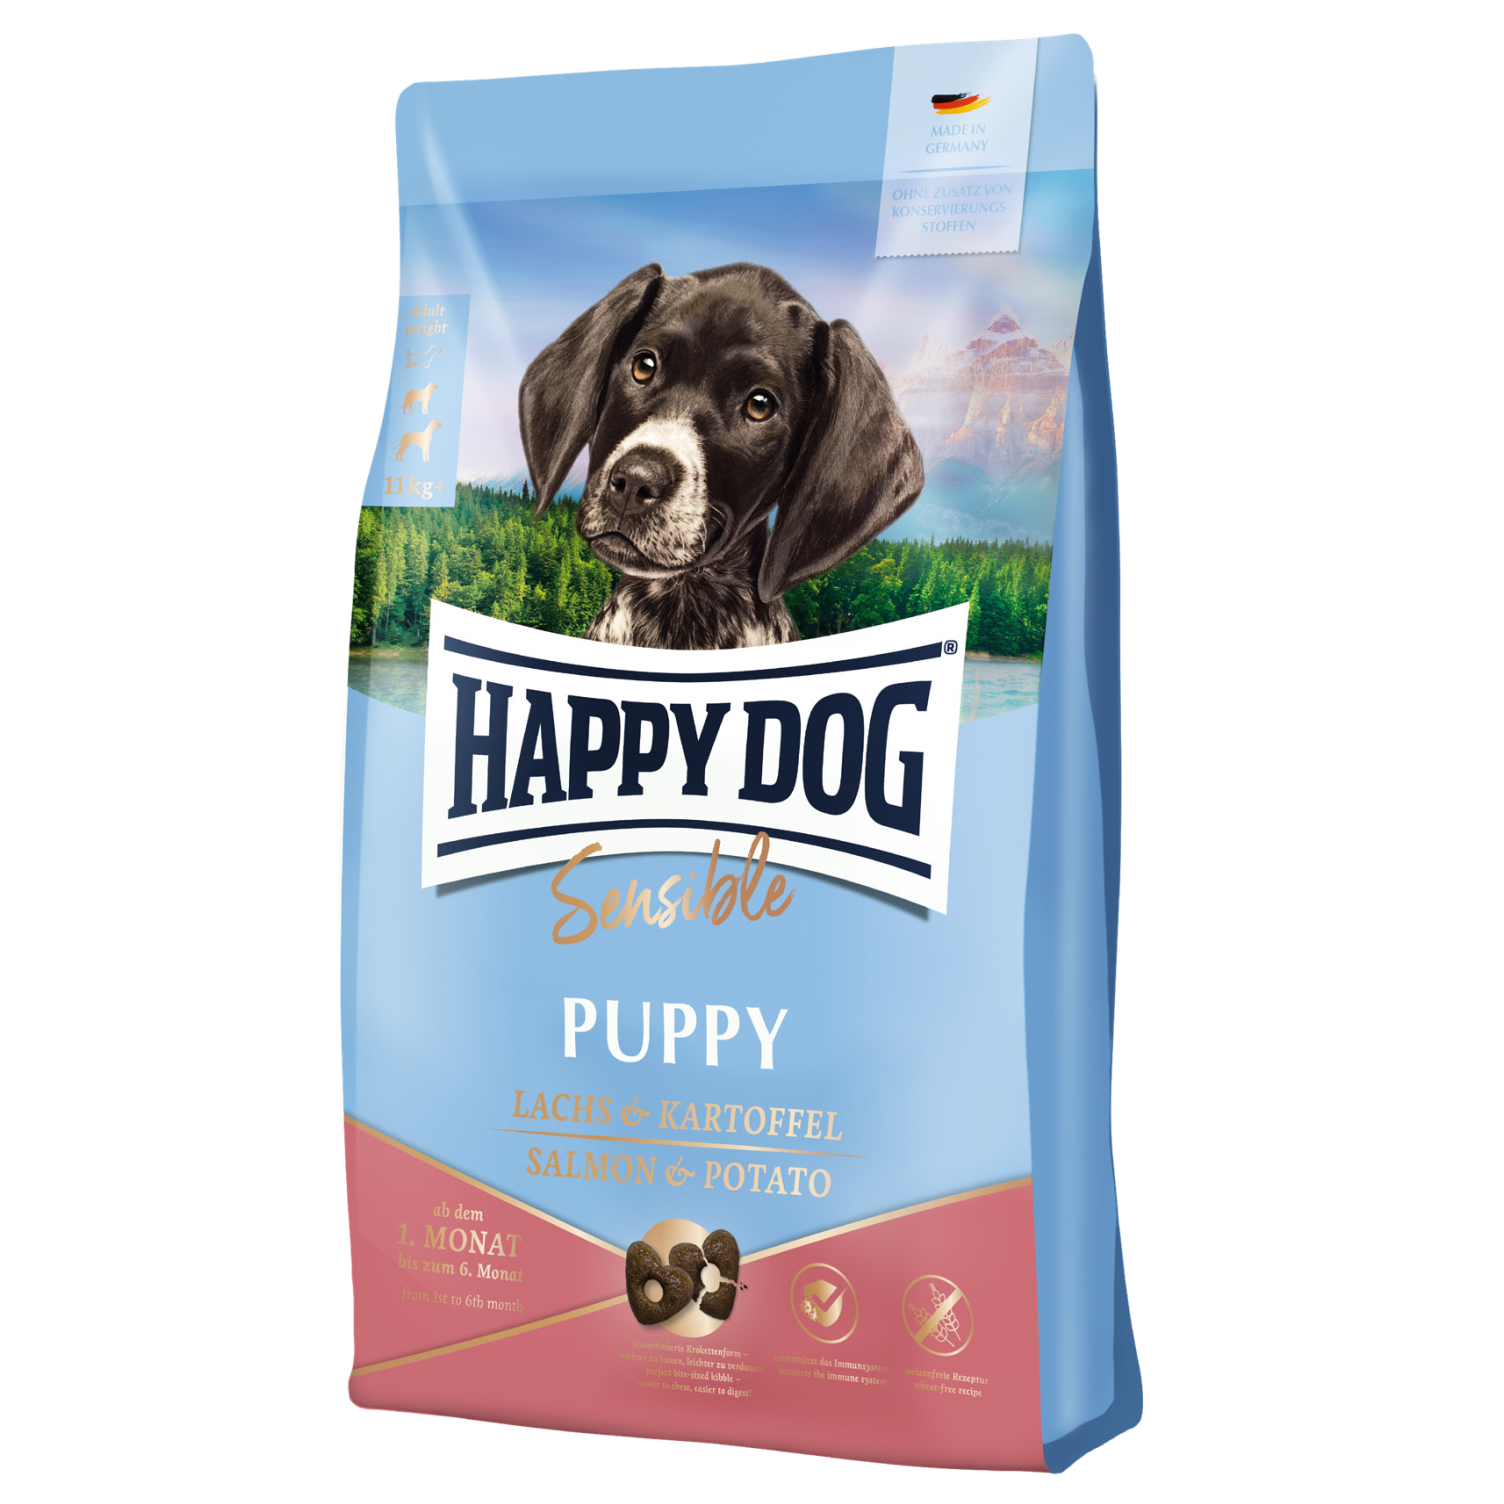 Сухой корм для щенков Happy Dog Sensible Puppy Lachs & Kartoffel с лососем и картофелем, 10 кг (61000) - фото 1